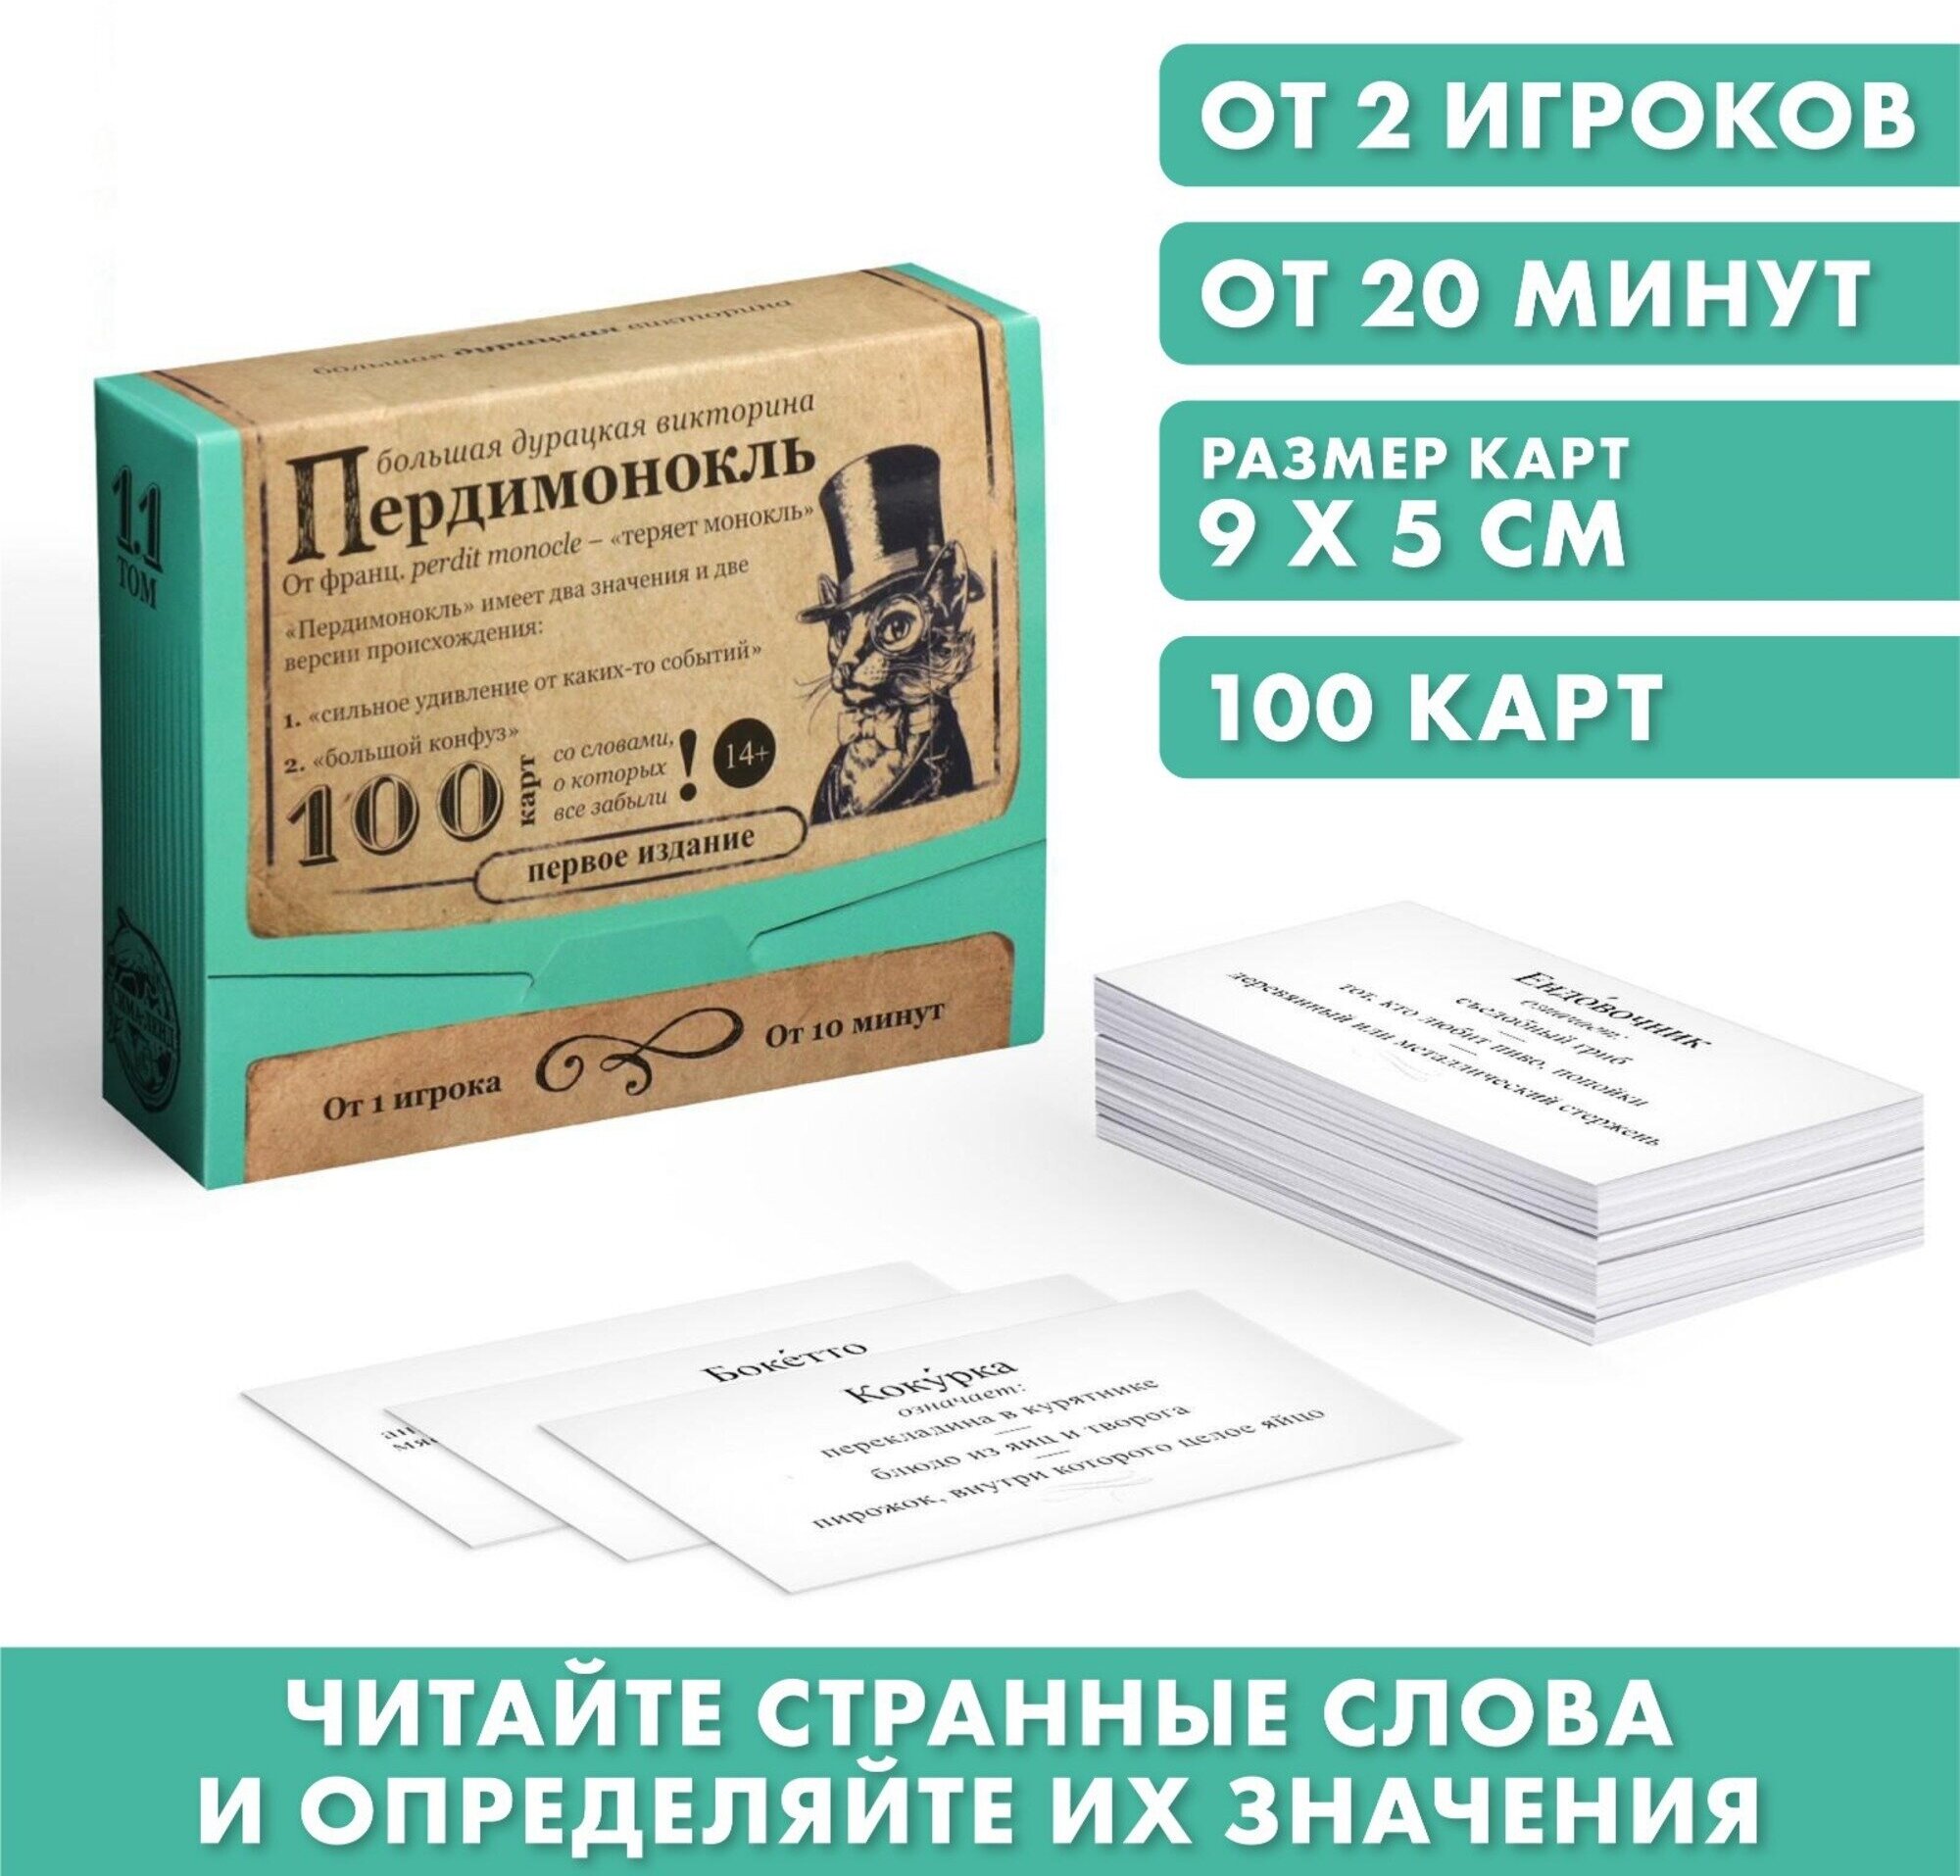 Большая дурацкая викторина "Пердимонокль", 100 карт